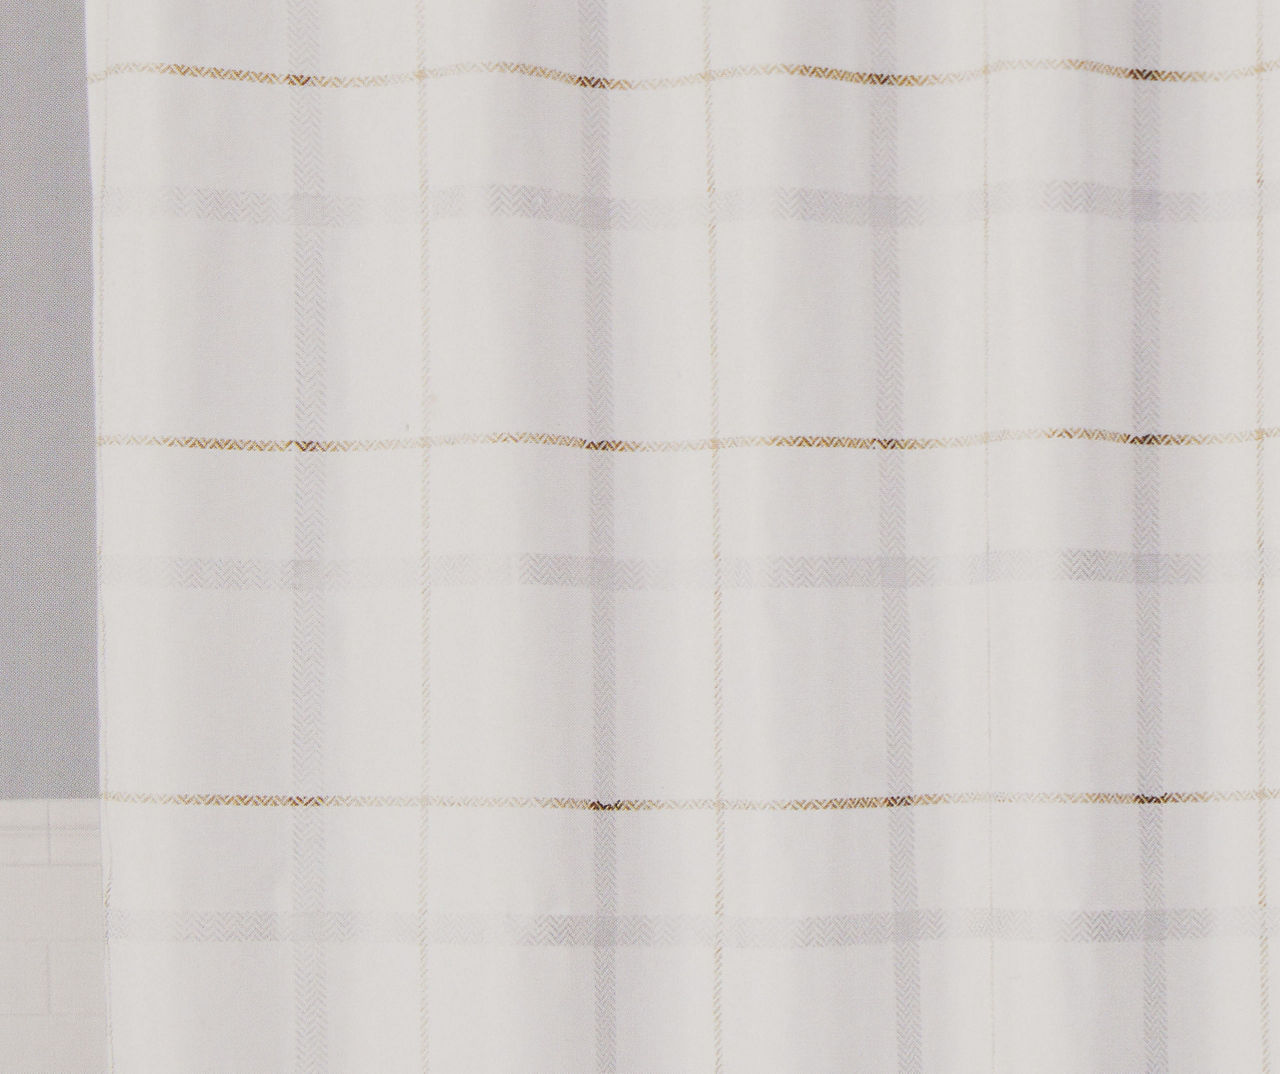 NEW Louis Vuitton damier blue Shower Curtain Sets • Kybershop